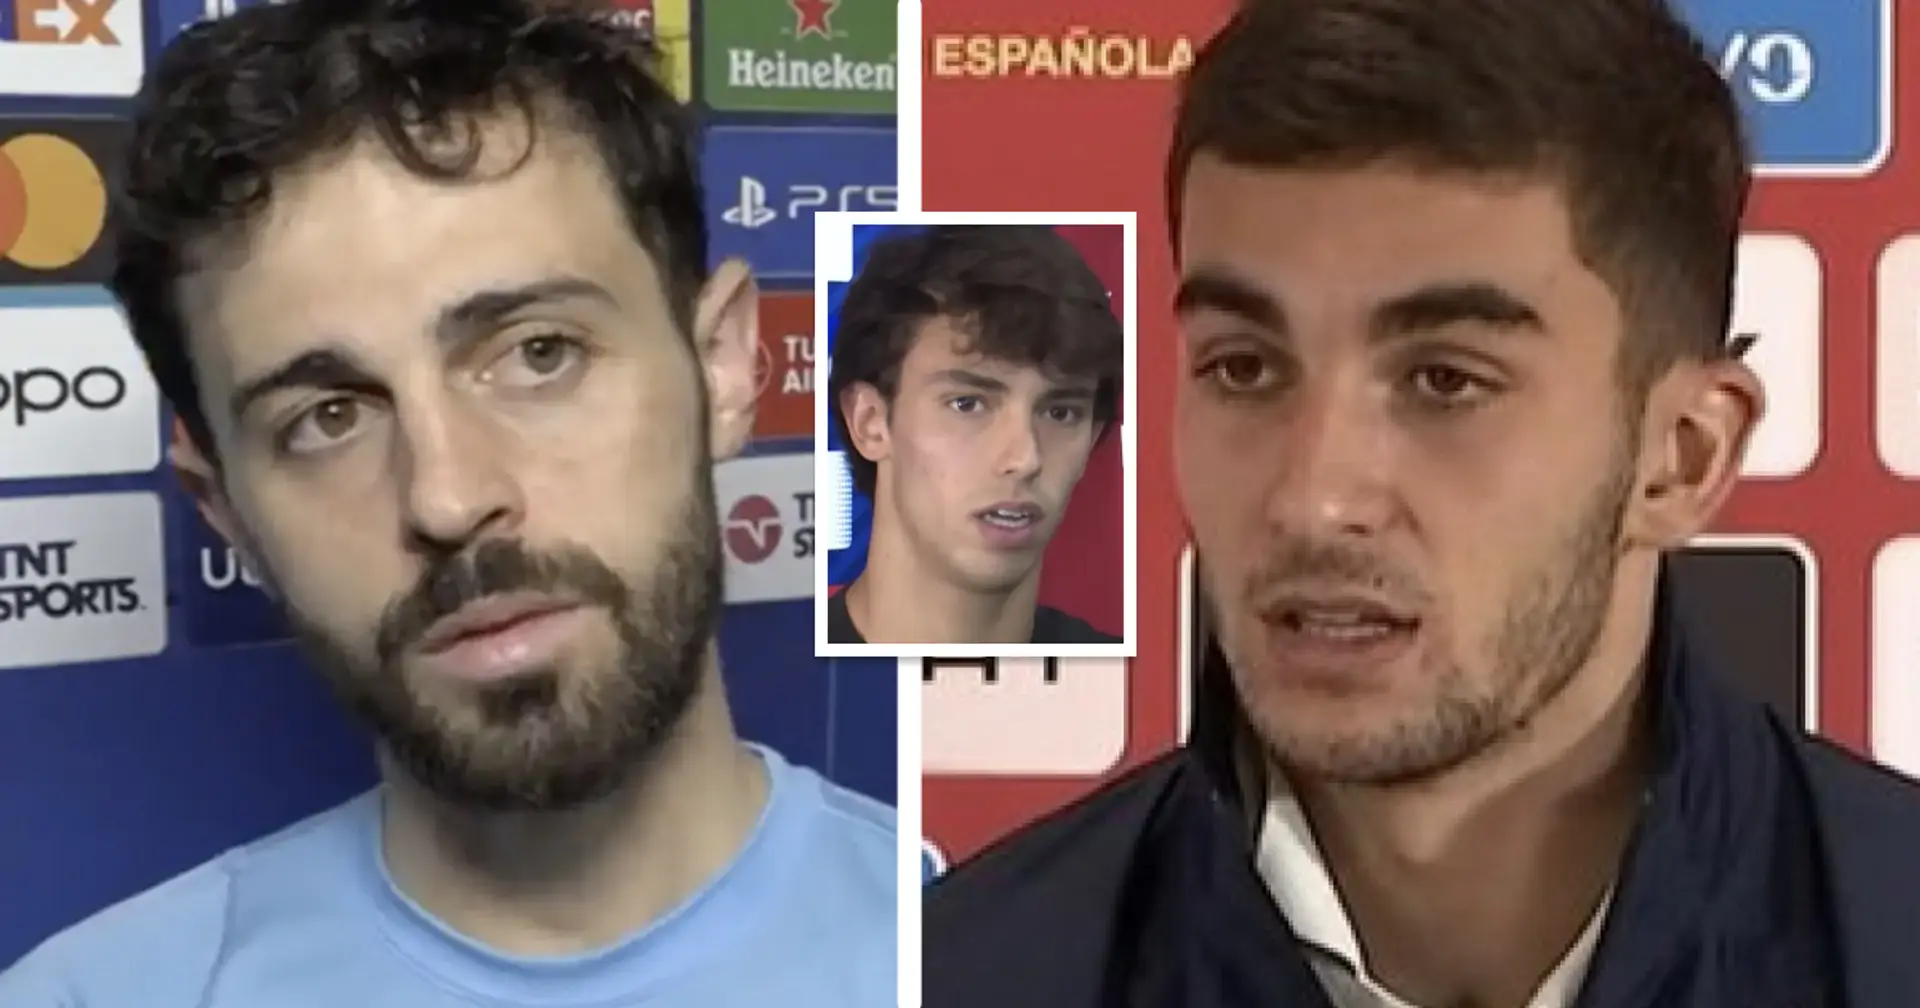 Bernardo Silva, Ferran et 8 autres noms dans le tour d'horizon des transferts du Barça avec cotes de probabilité